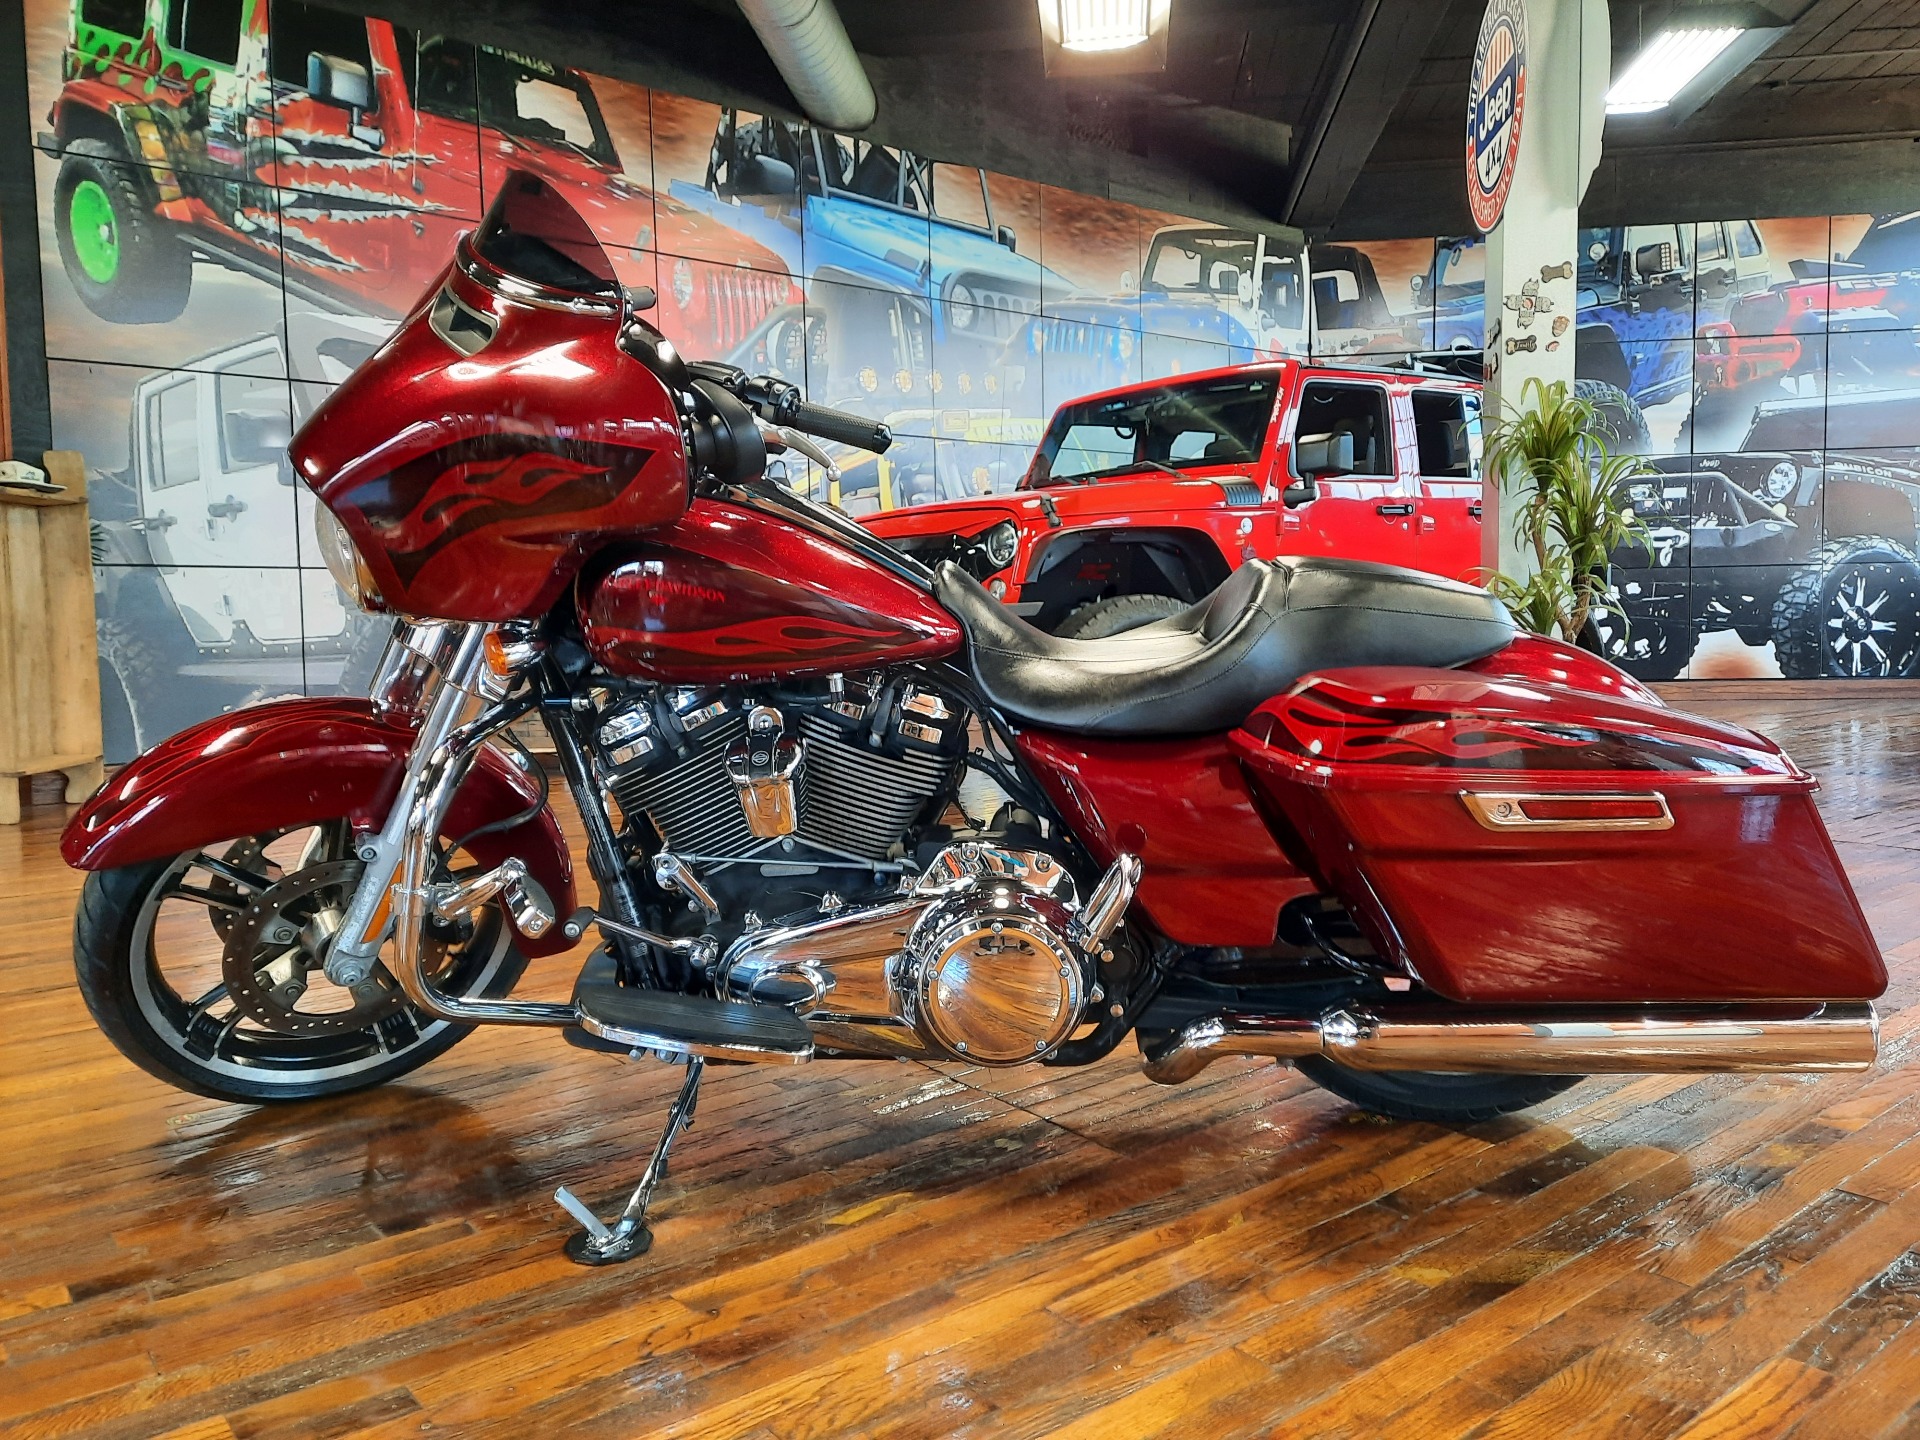 2017 Harley-Davidson Street Glide® Special in Laurel, Mississippi - Photo 5